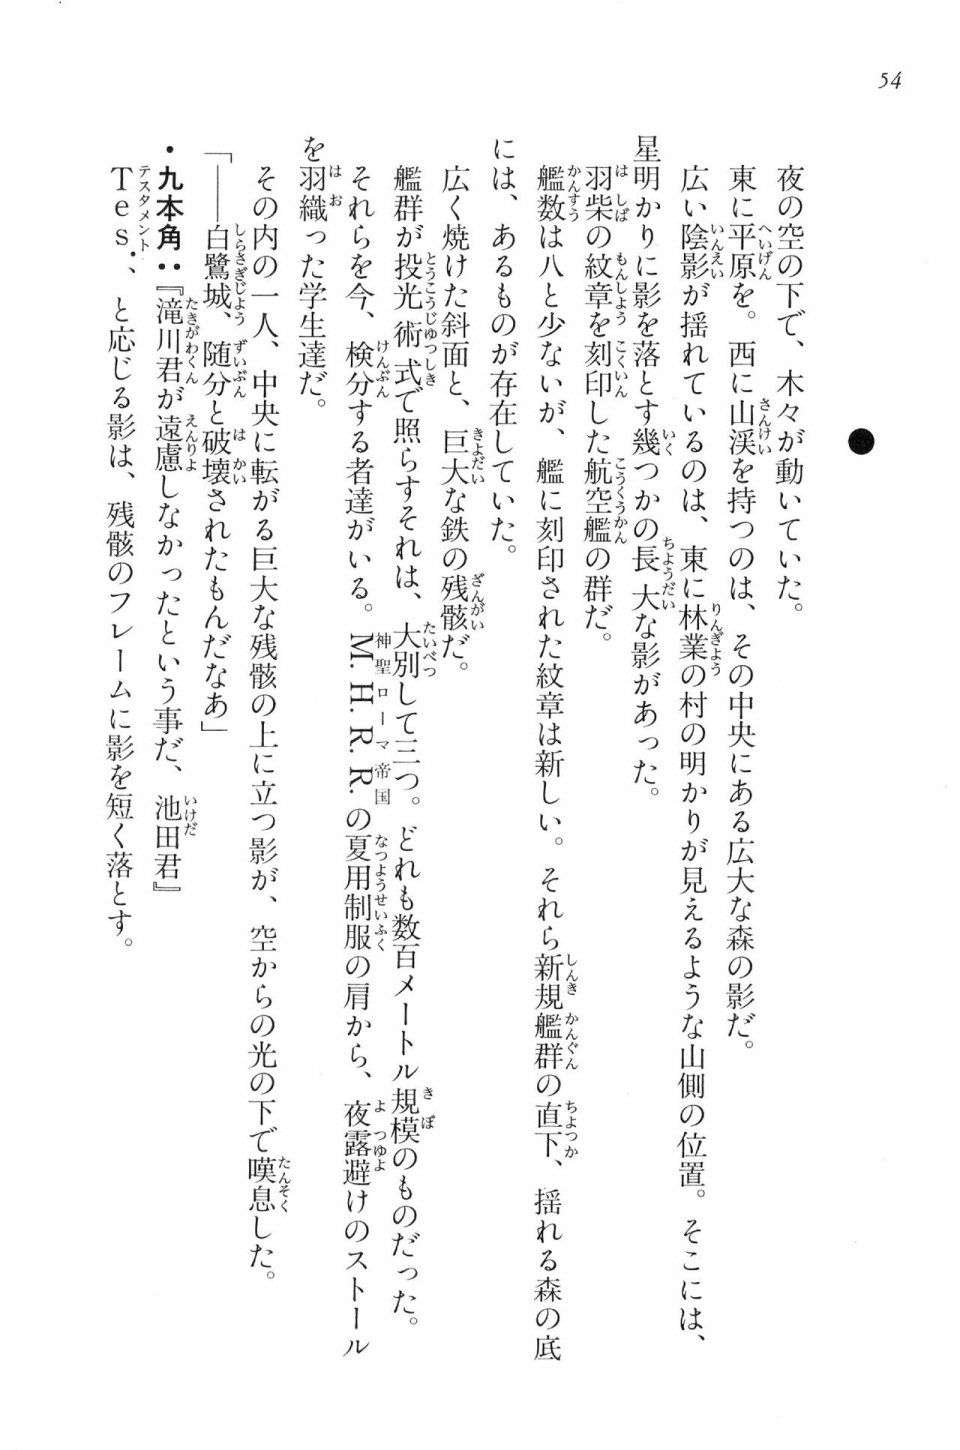 Kyoukai Senjou no Horizon LN Vol 16(7A) - Photo #54